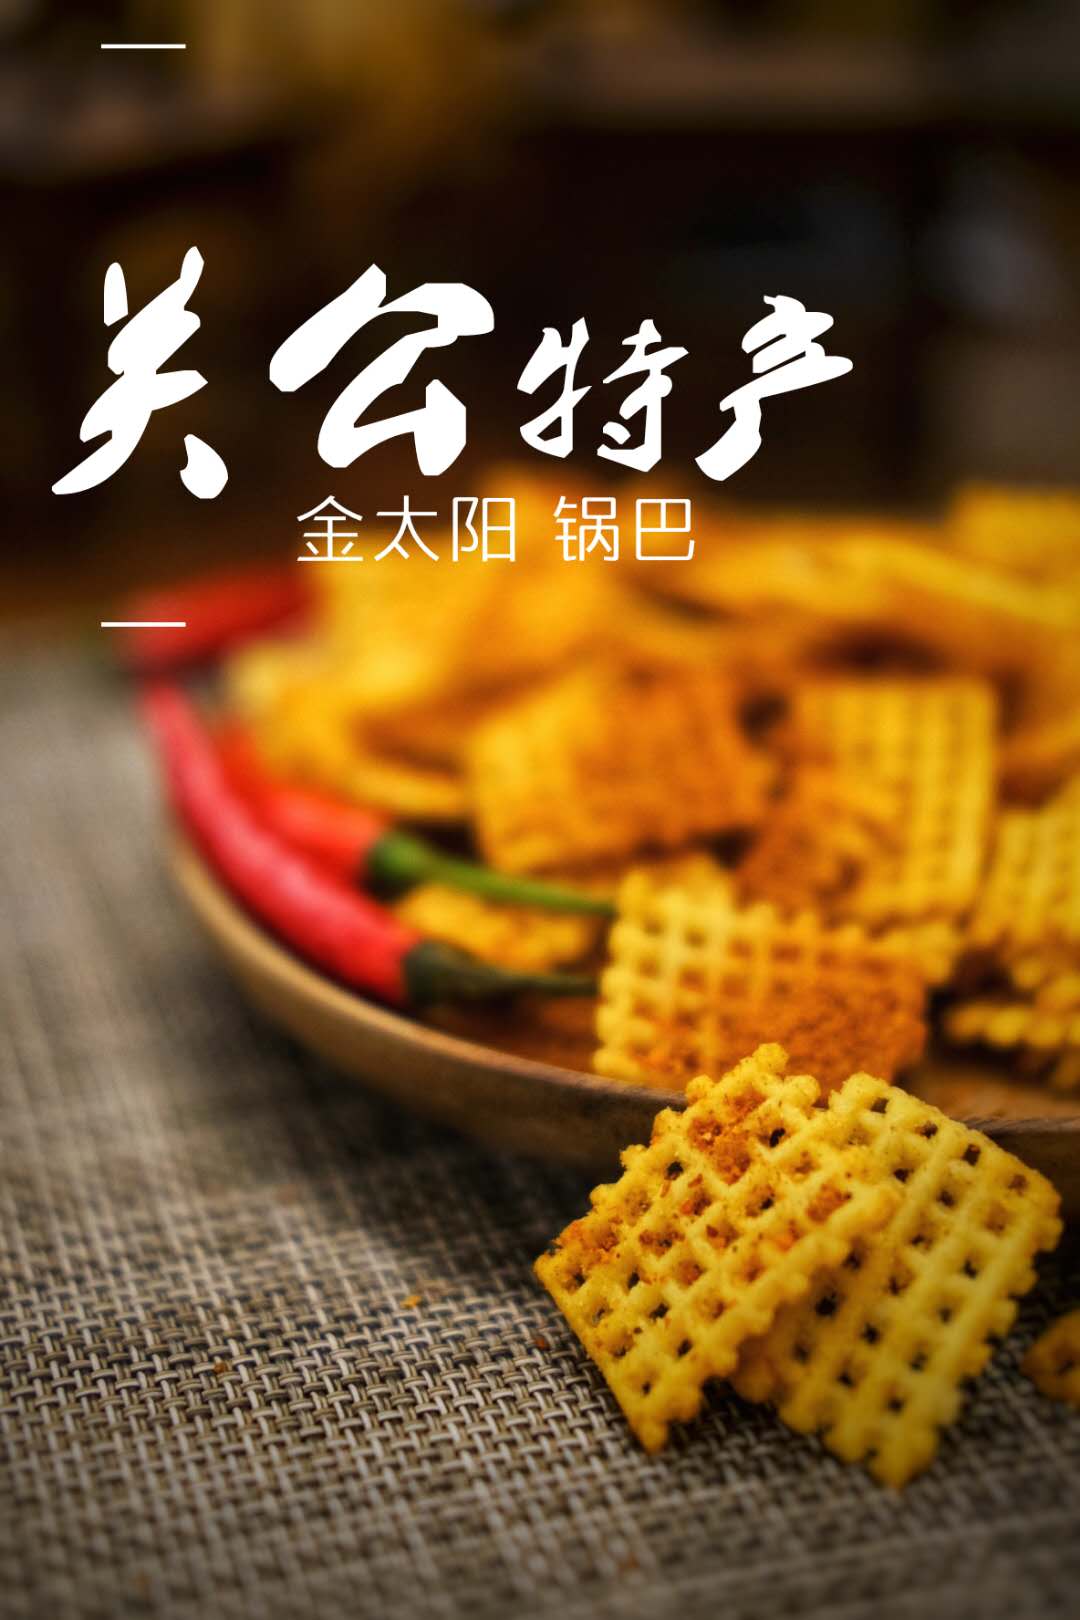 膨化食品 金太阳厂家直销 麻辣锅巴锅巴1